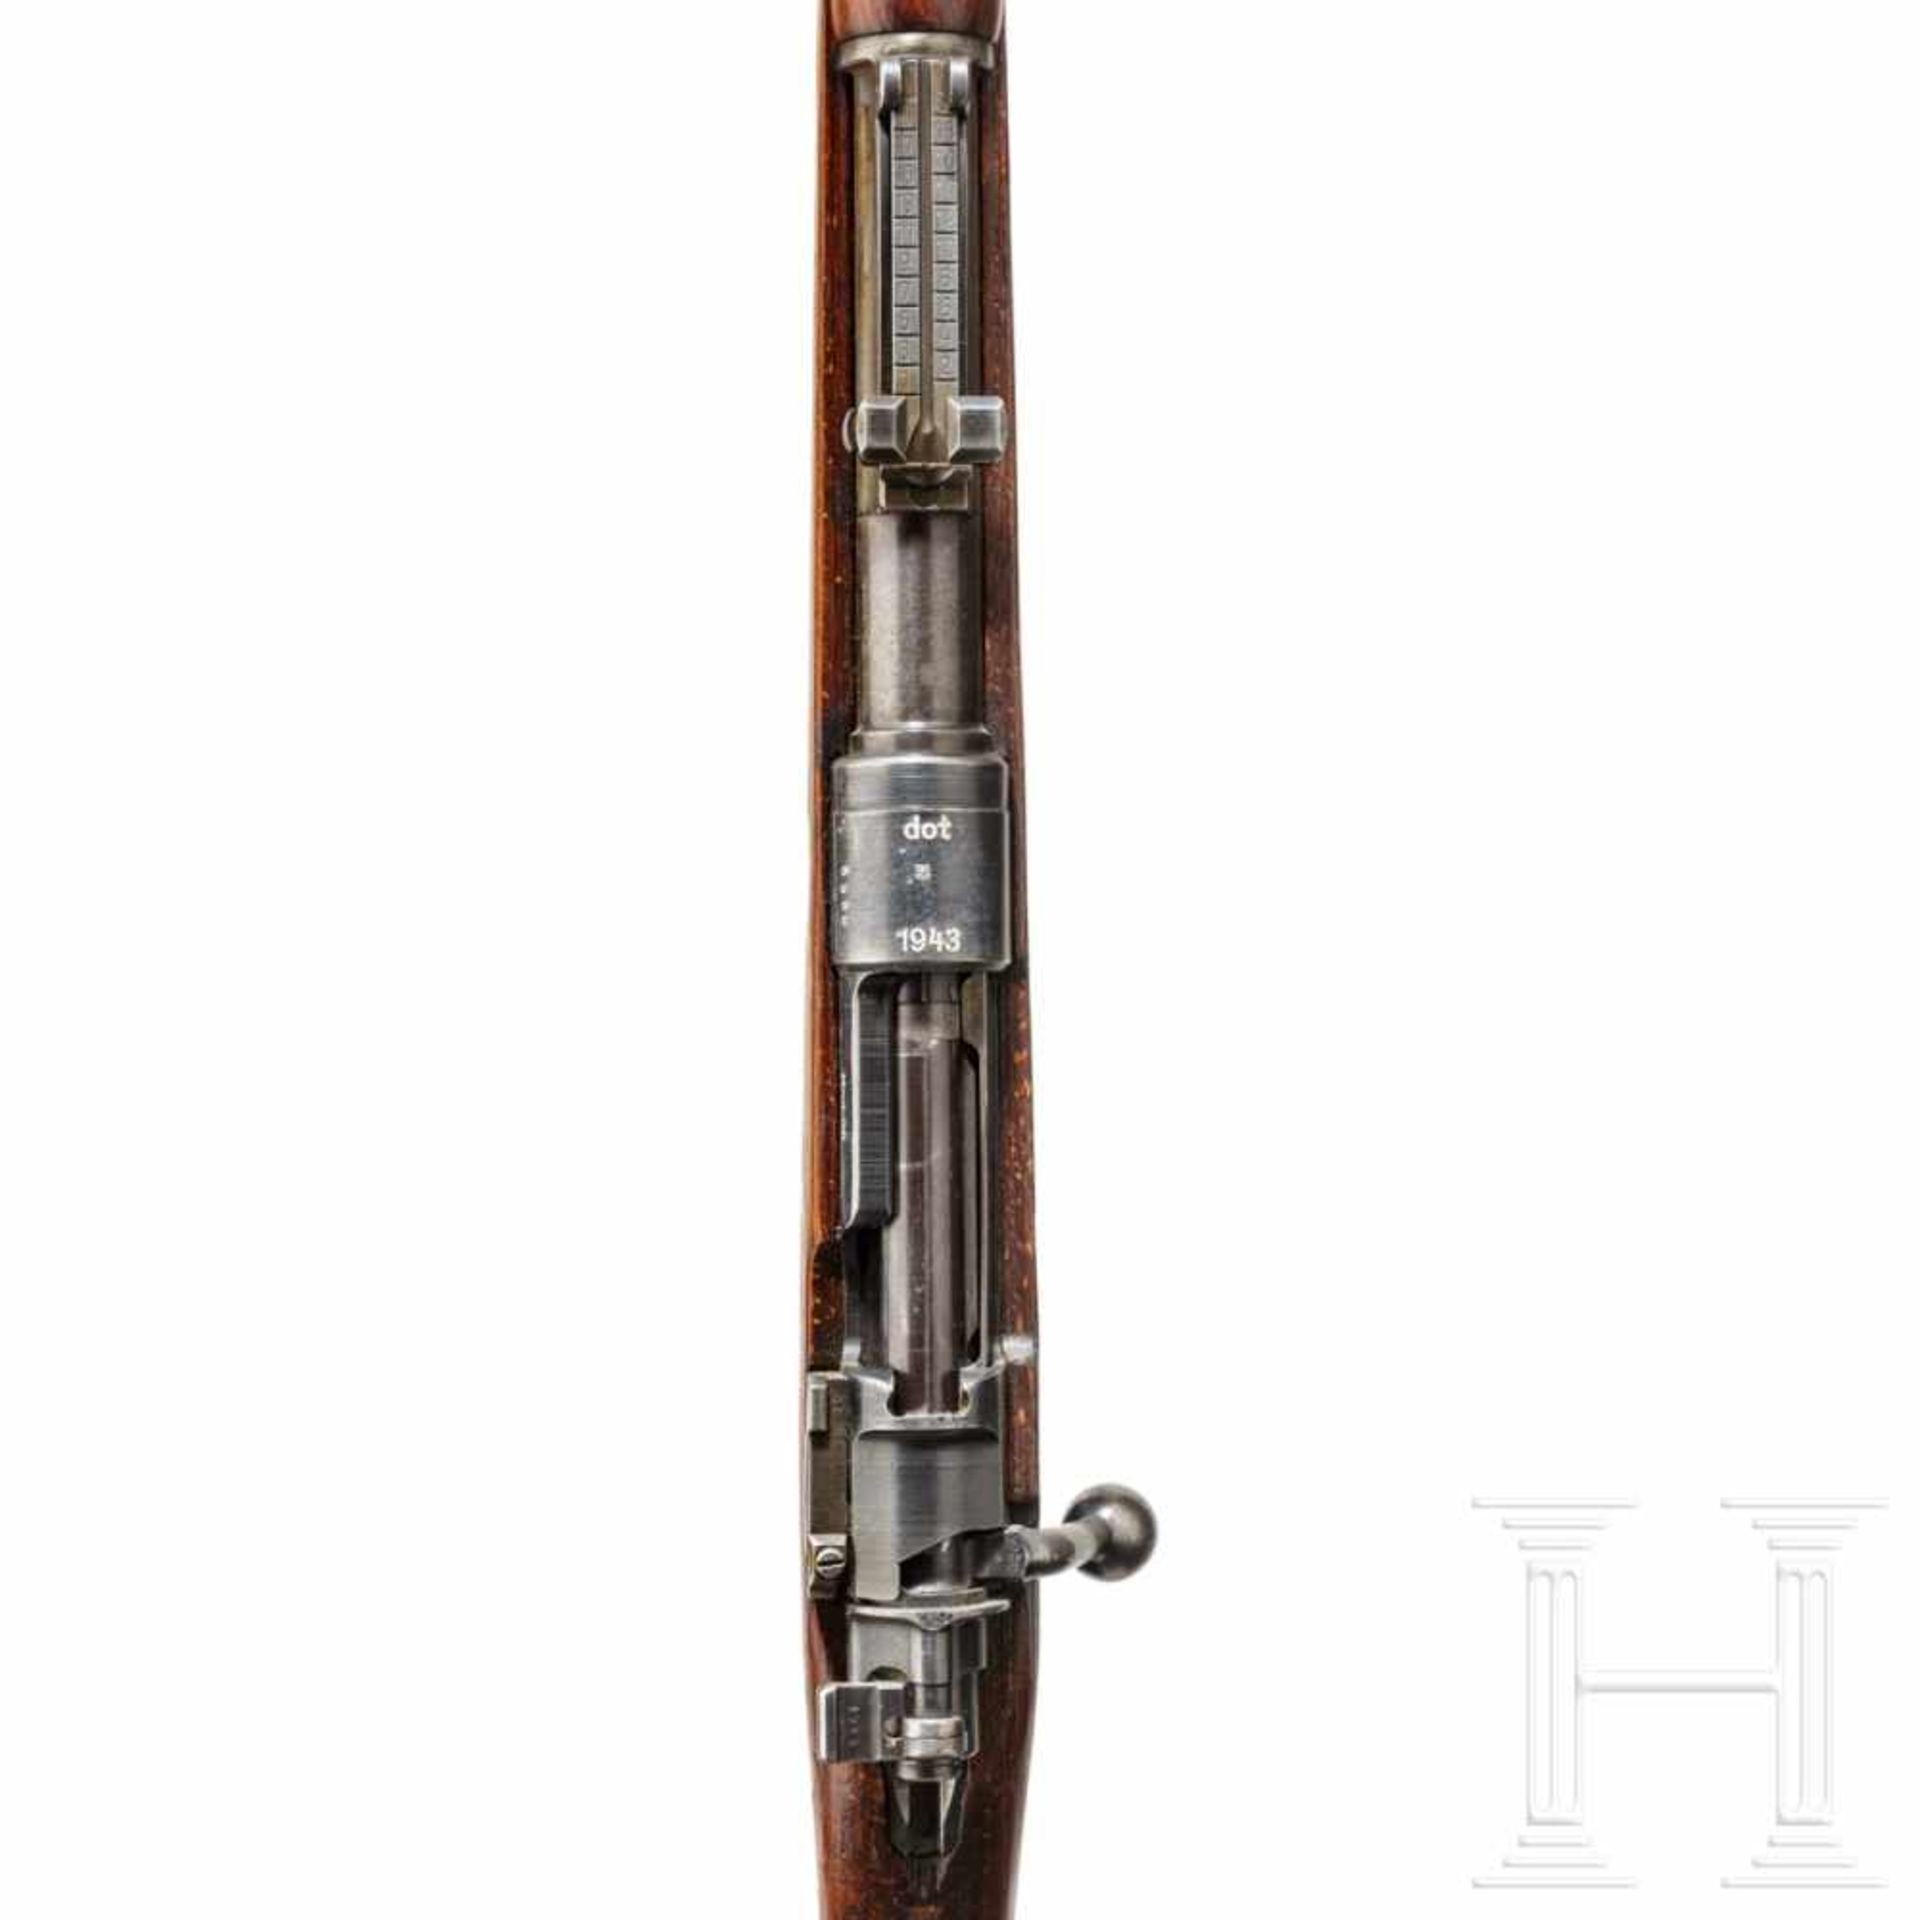 A carbine 98 k, code "dot - 1943"Kal. 8x57 IS, Nr. 5958m, nummerngleich. Fast blanker Lauf. - Bild 3 aus 3